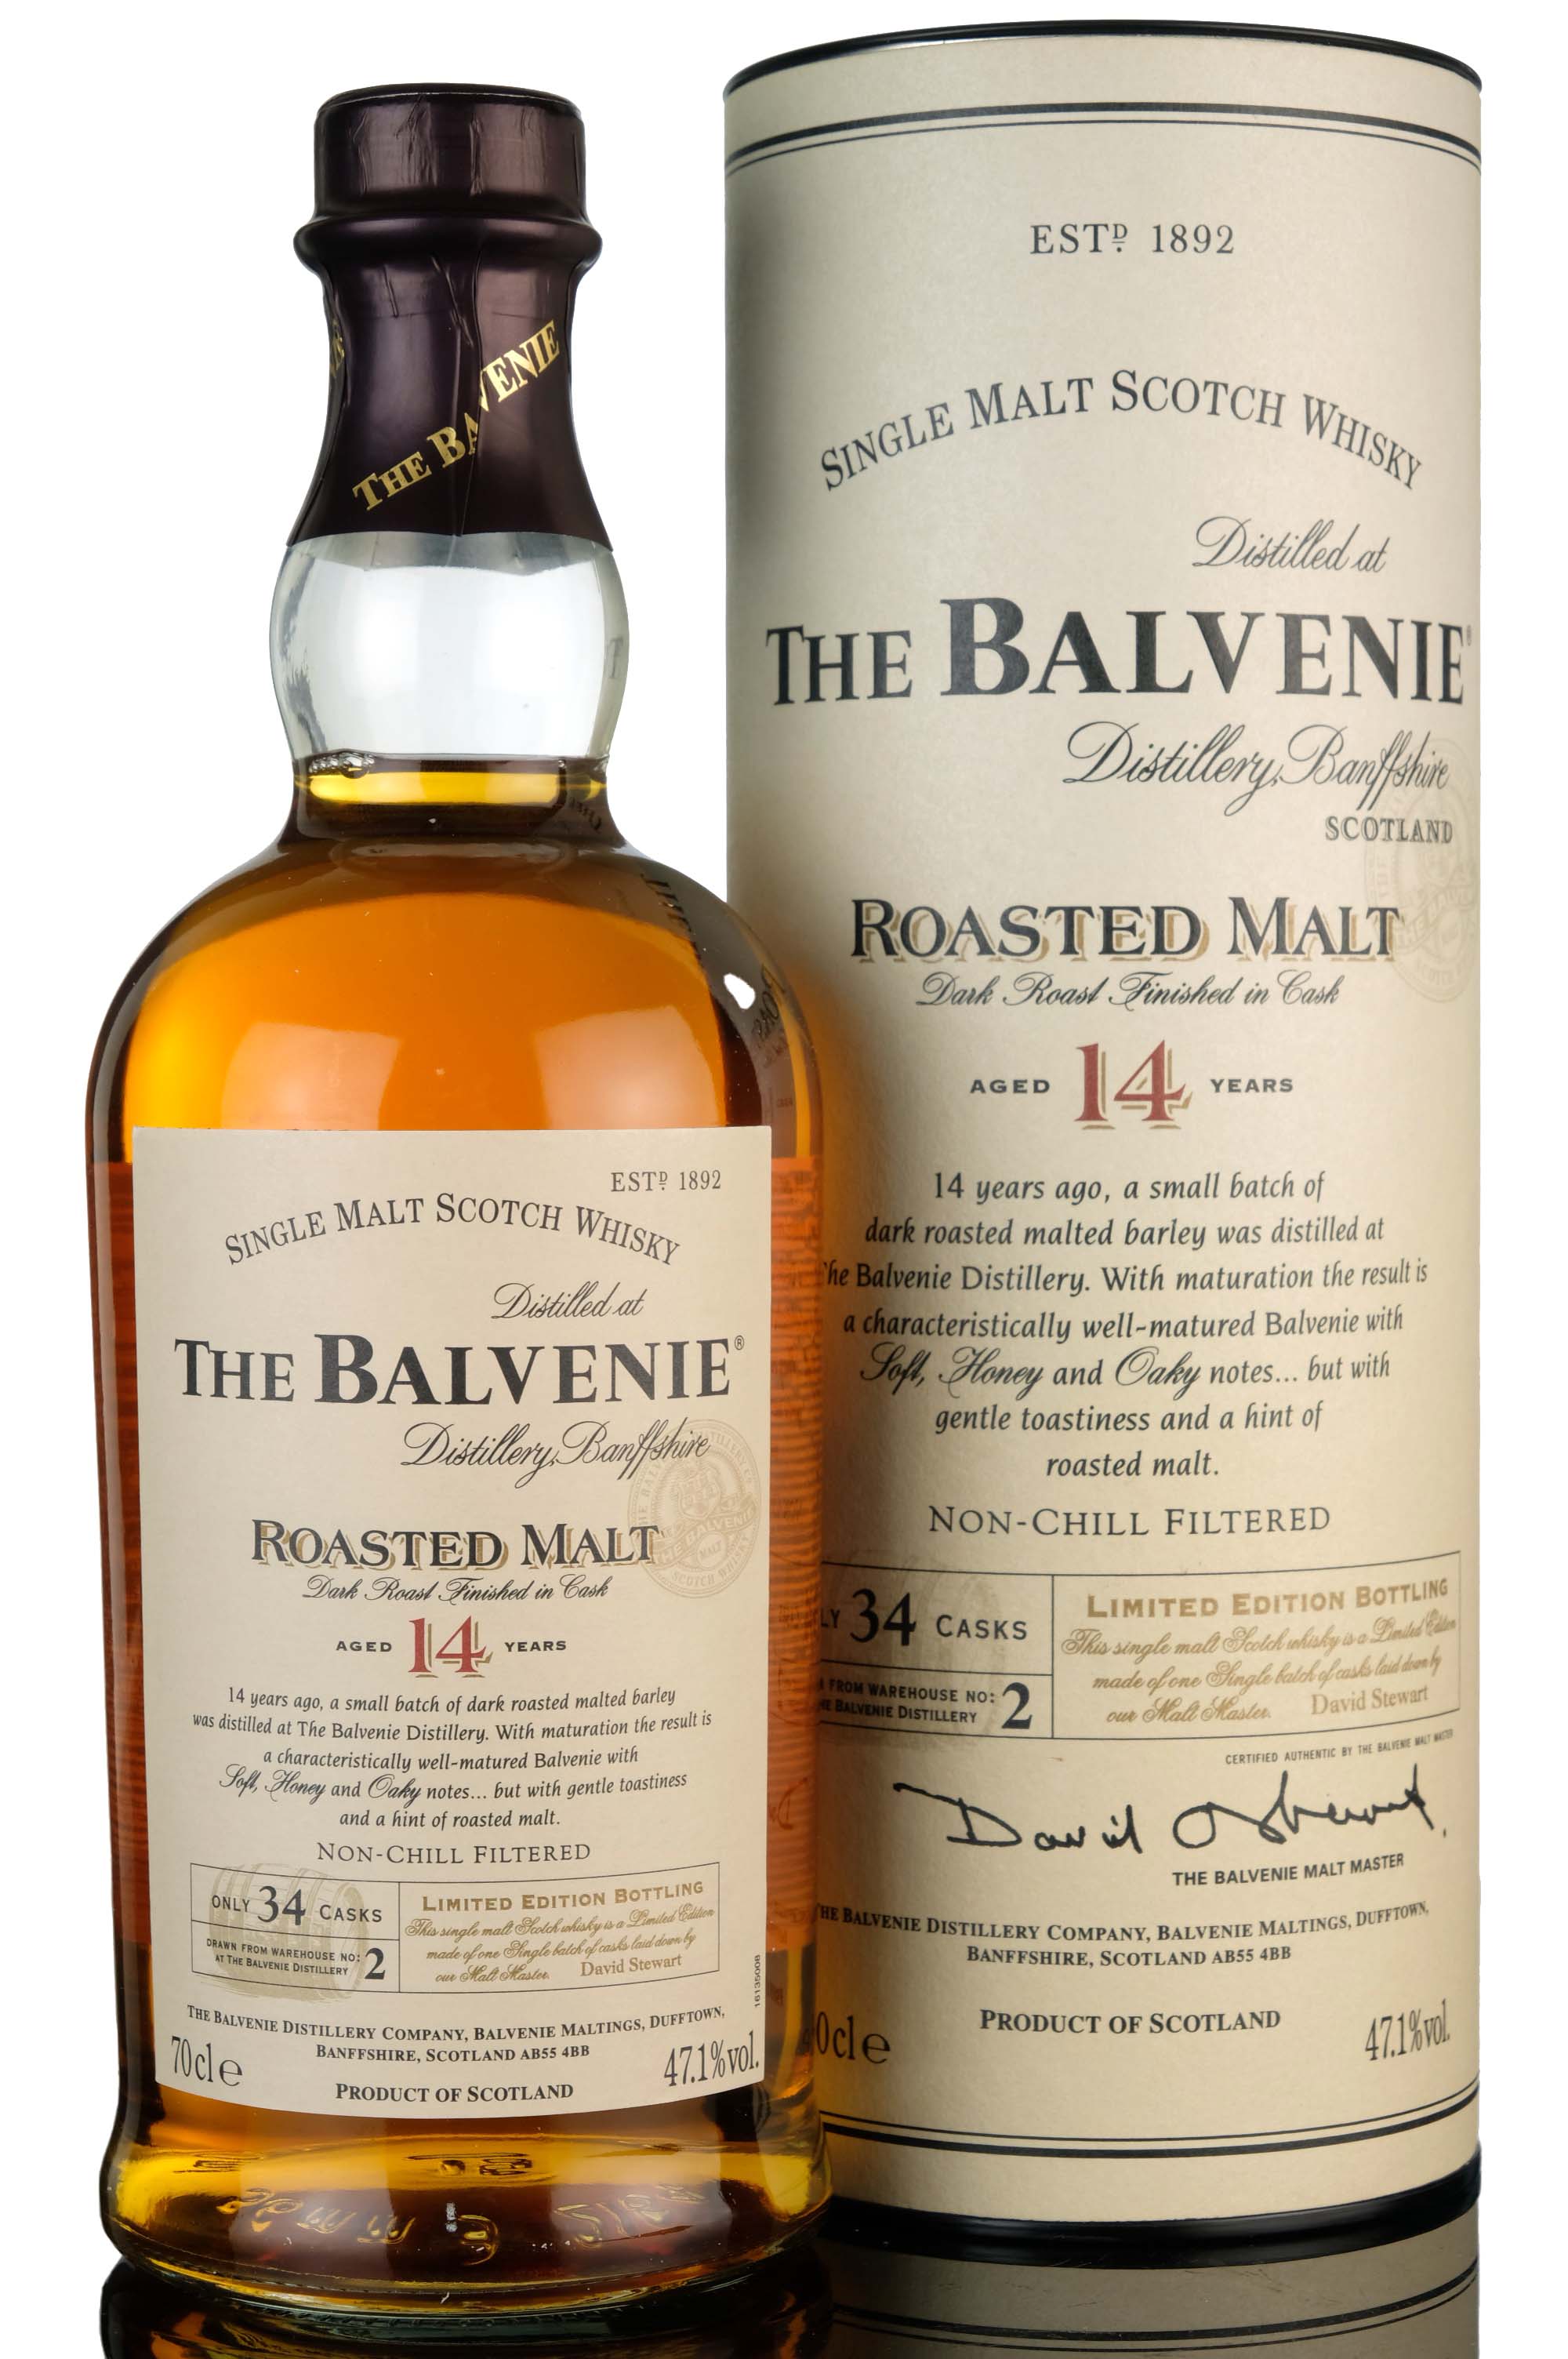 Balvenie 14 Year Old - Roasted Malt - 2006 Release